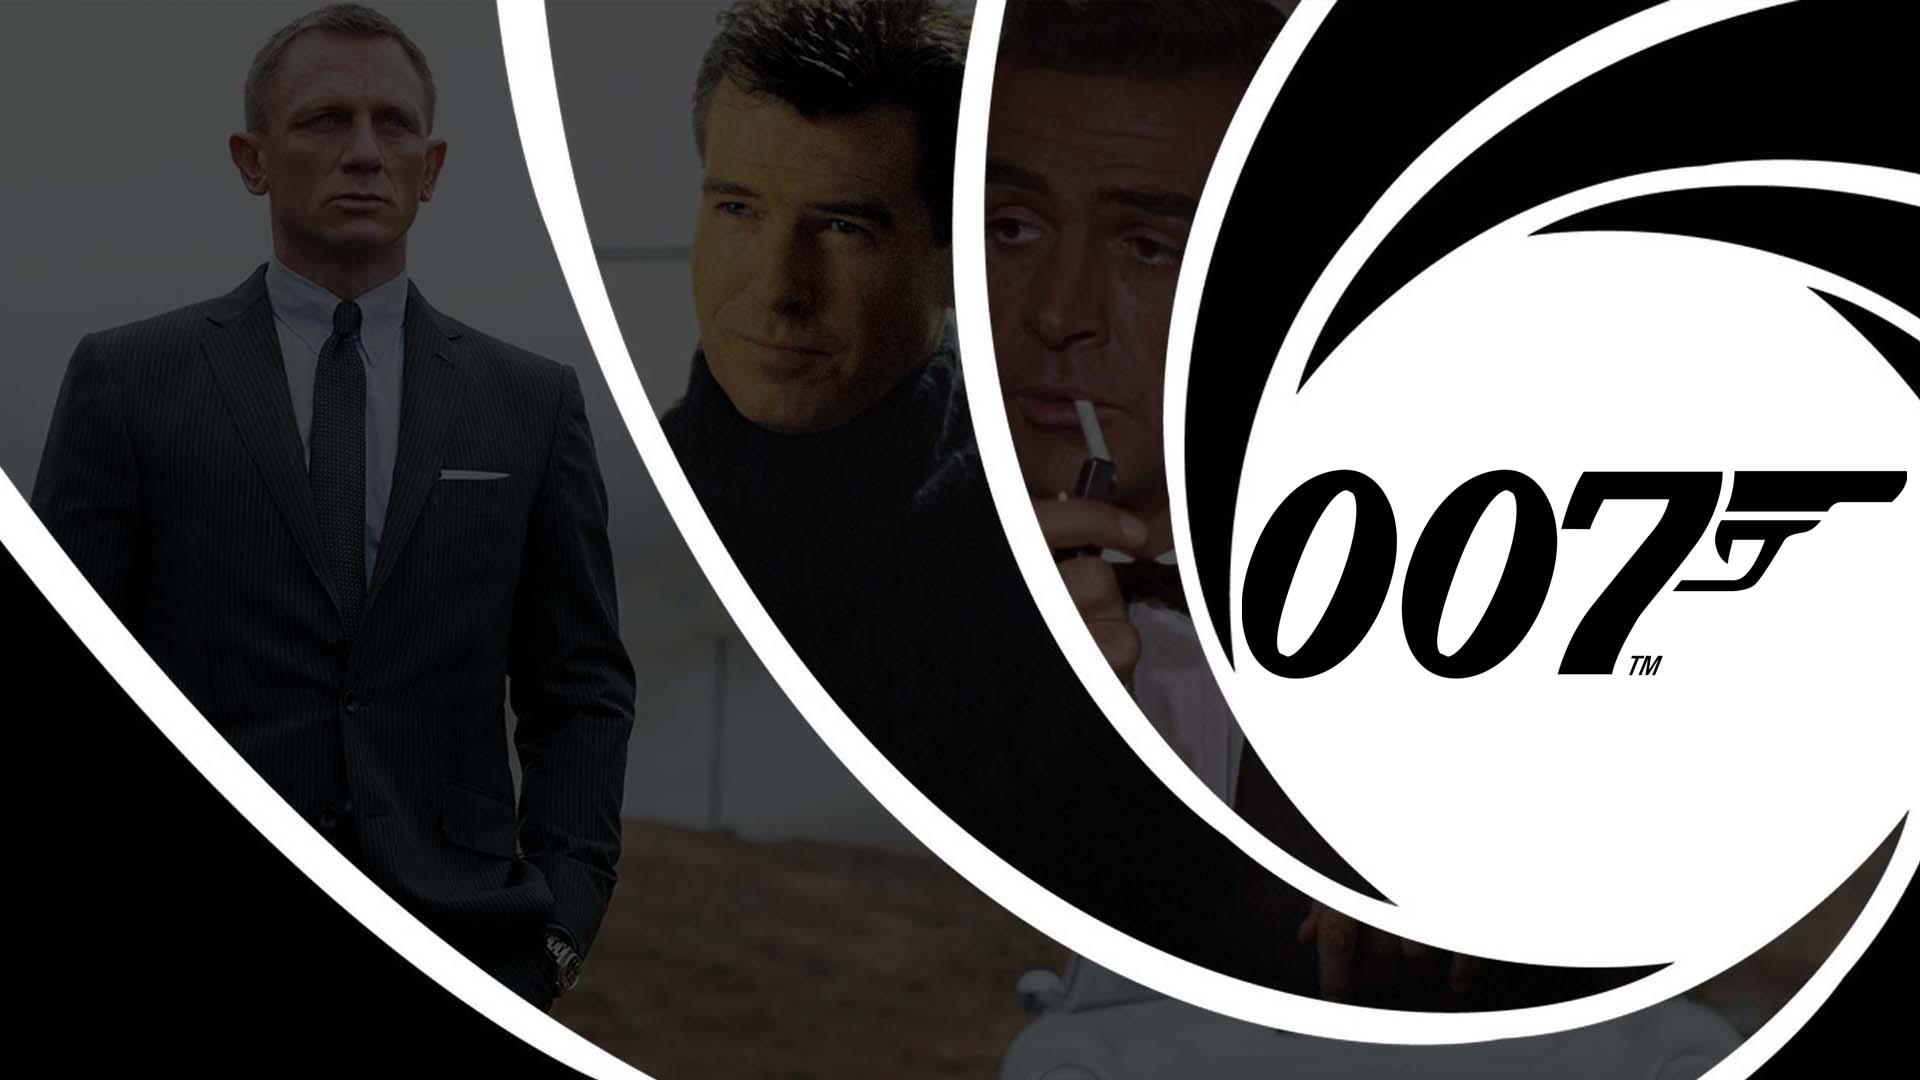 ممثلون حملوا لقب العميل 007 من 1954 وحتى الآن